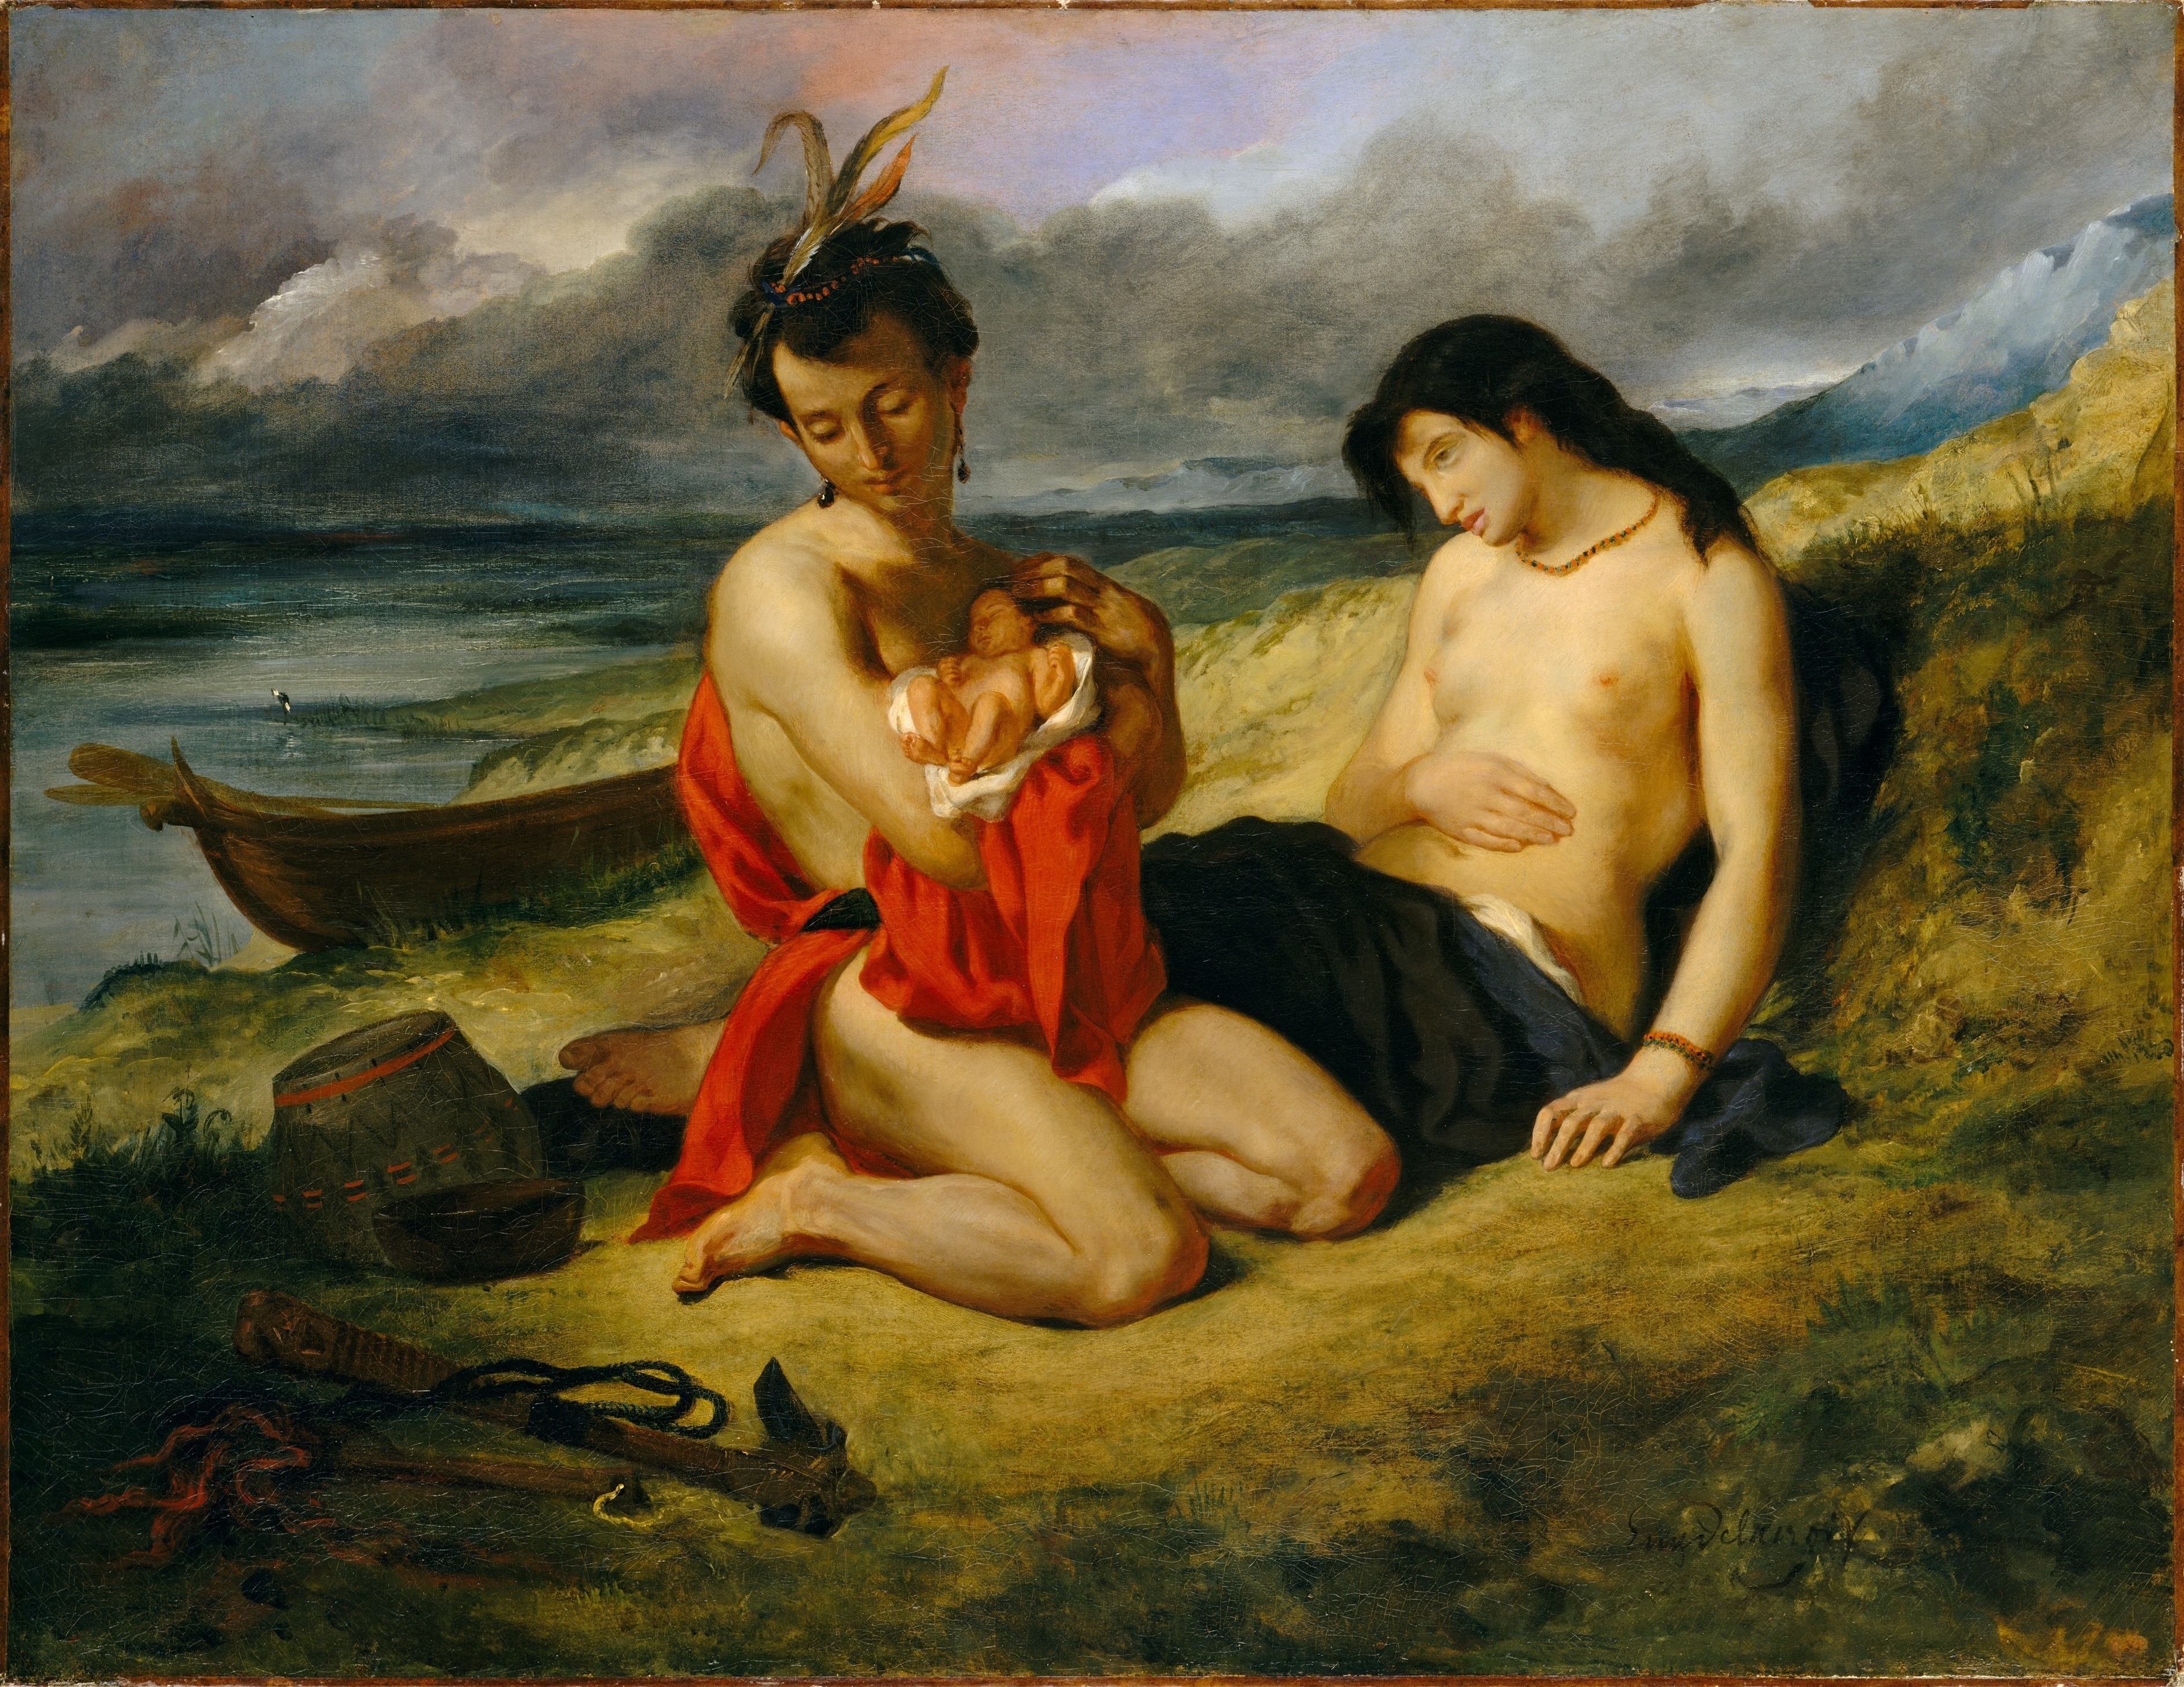 Eugène_Delacroix_-_Les_Natchez,_1835_(Metropolitan_Museum_of_Art)